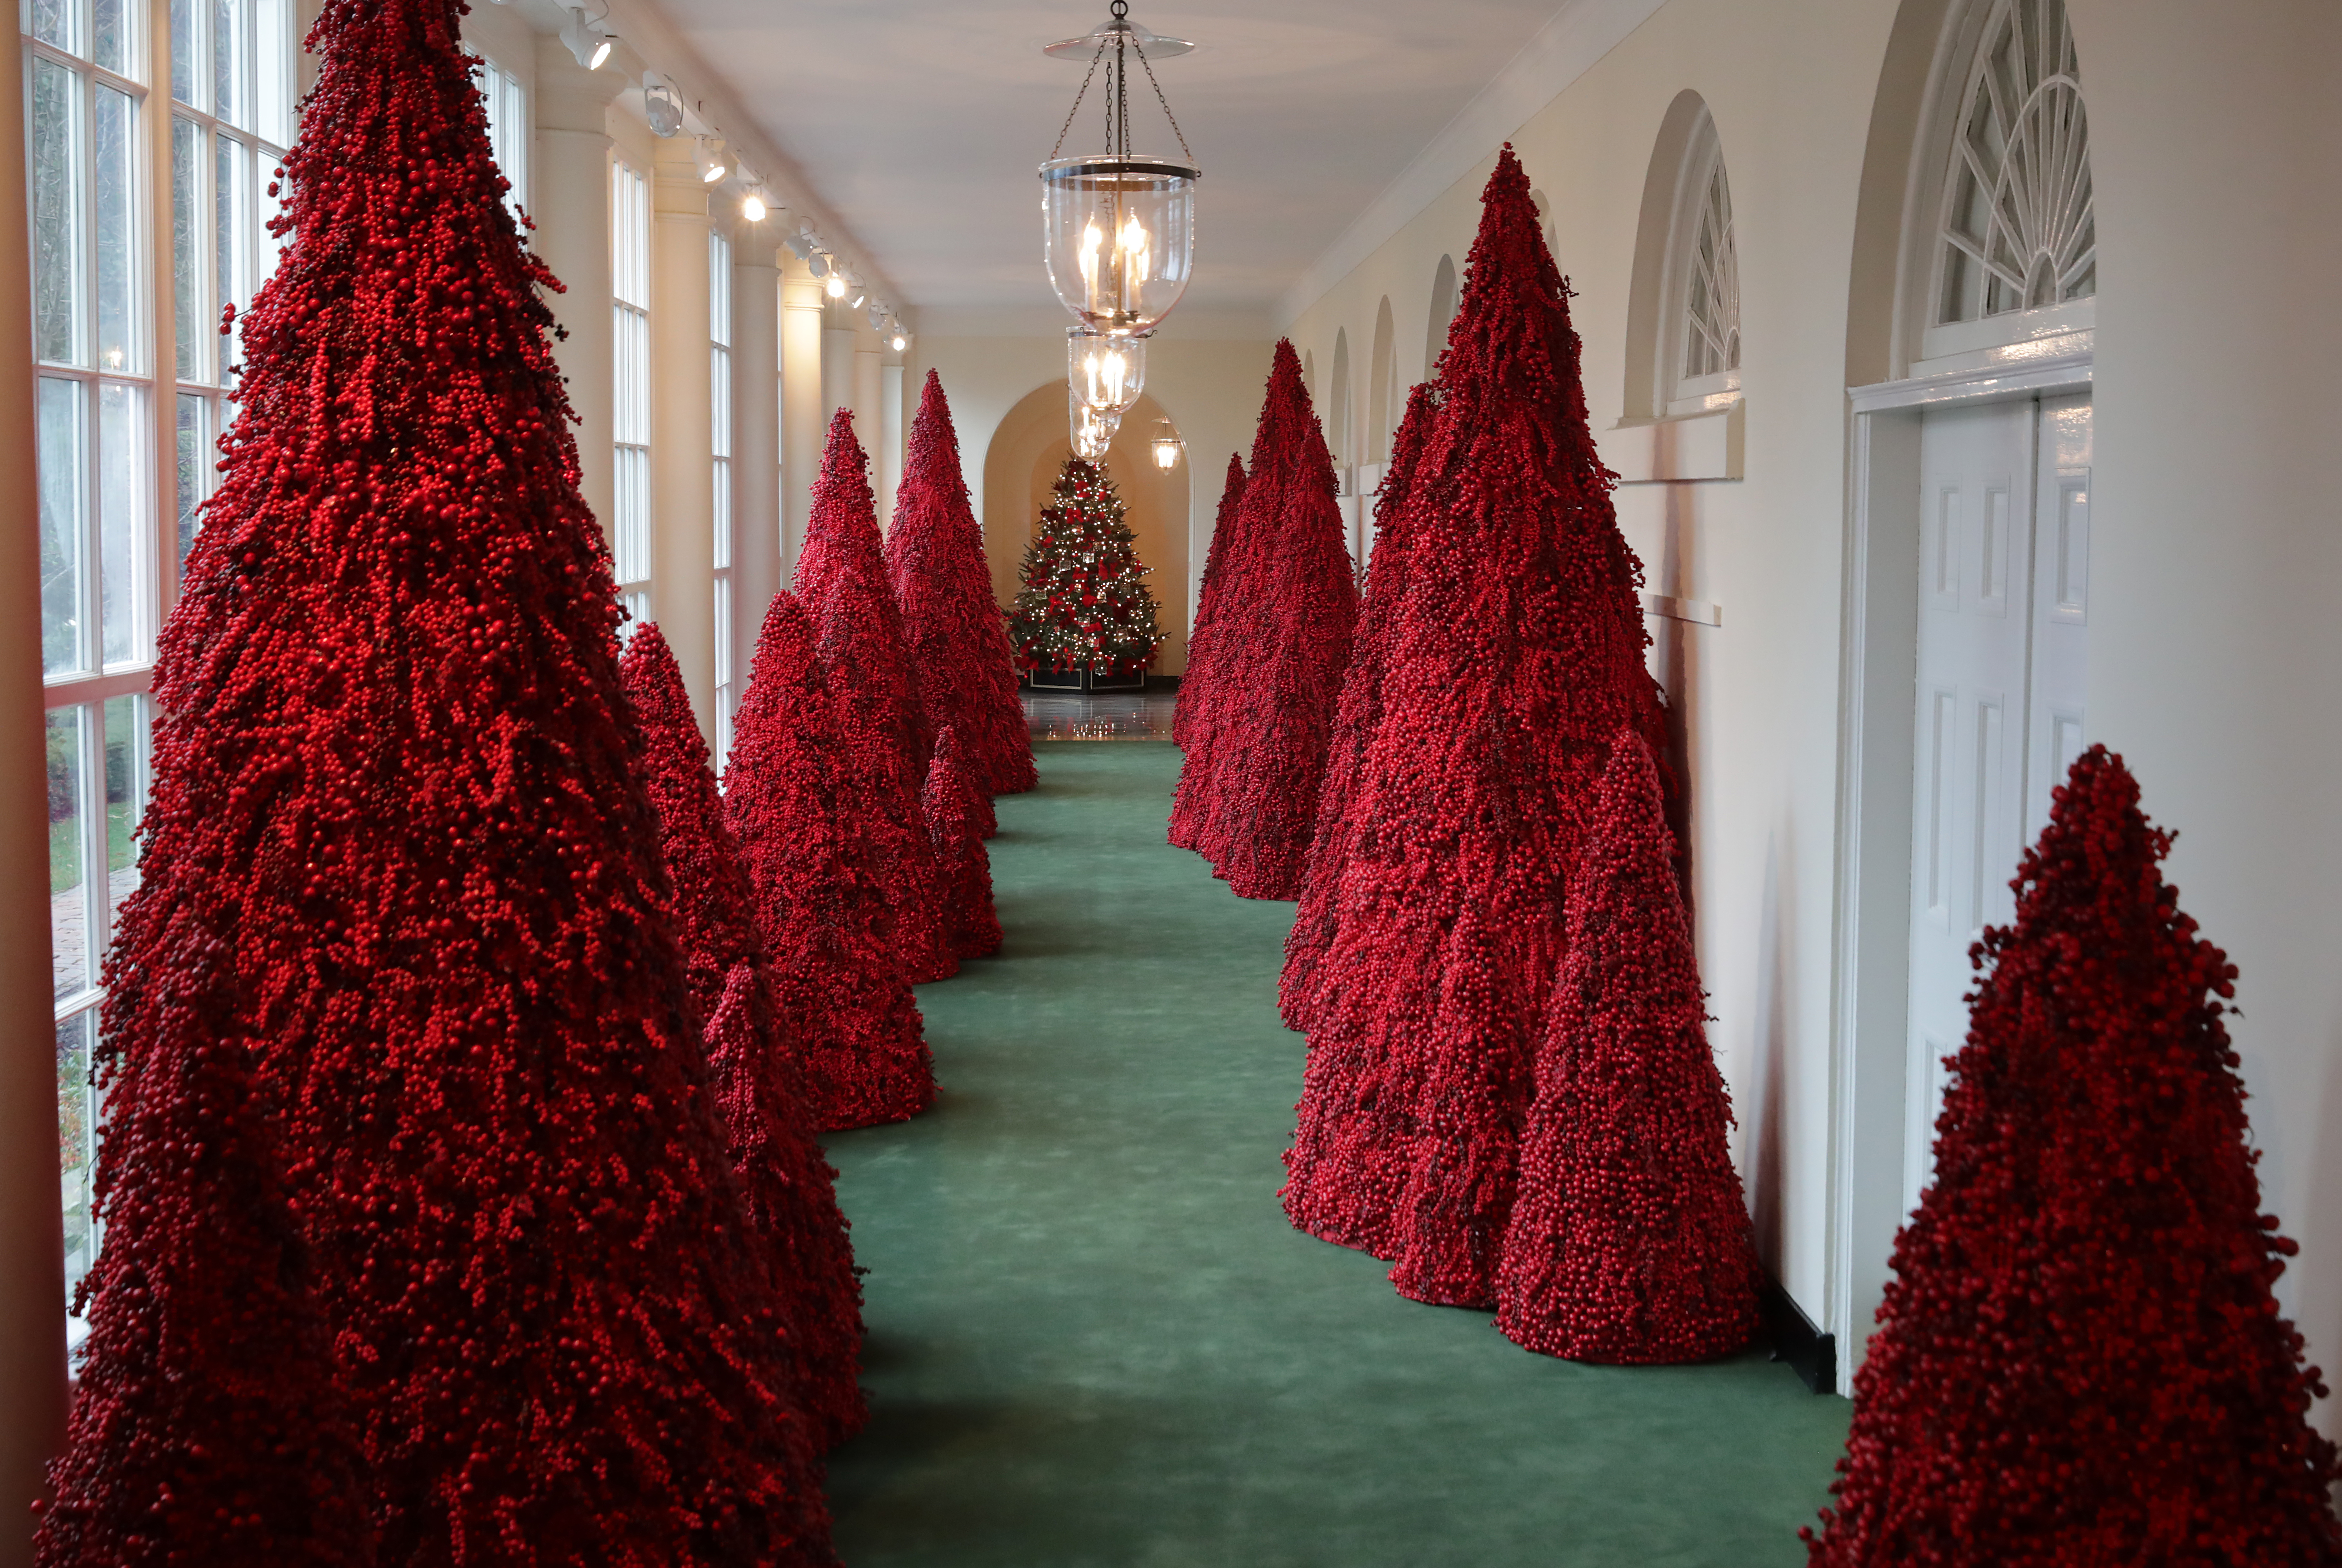 Първата дама на САЩ Мелания Тръмп представи тазгодишната коледна украса на Белия дом, като декорът й е вдъхновен от лайтмотива "Съкровищата на Америка".